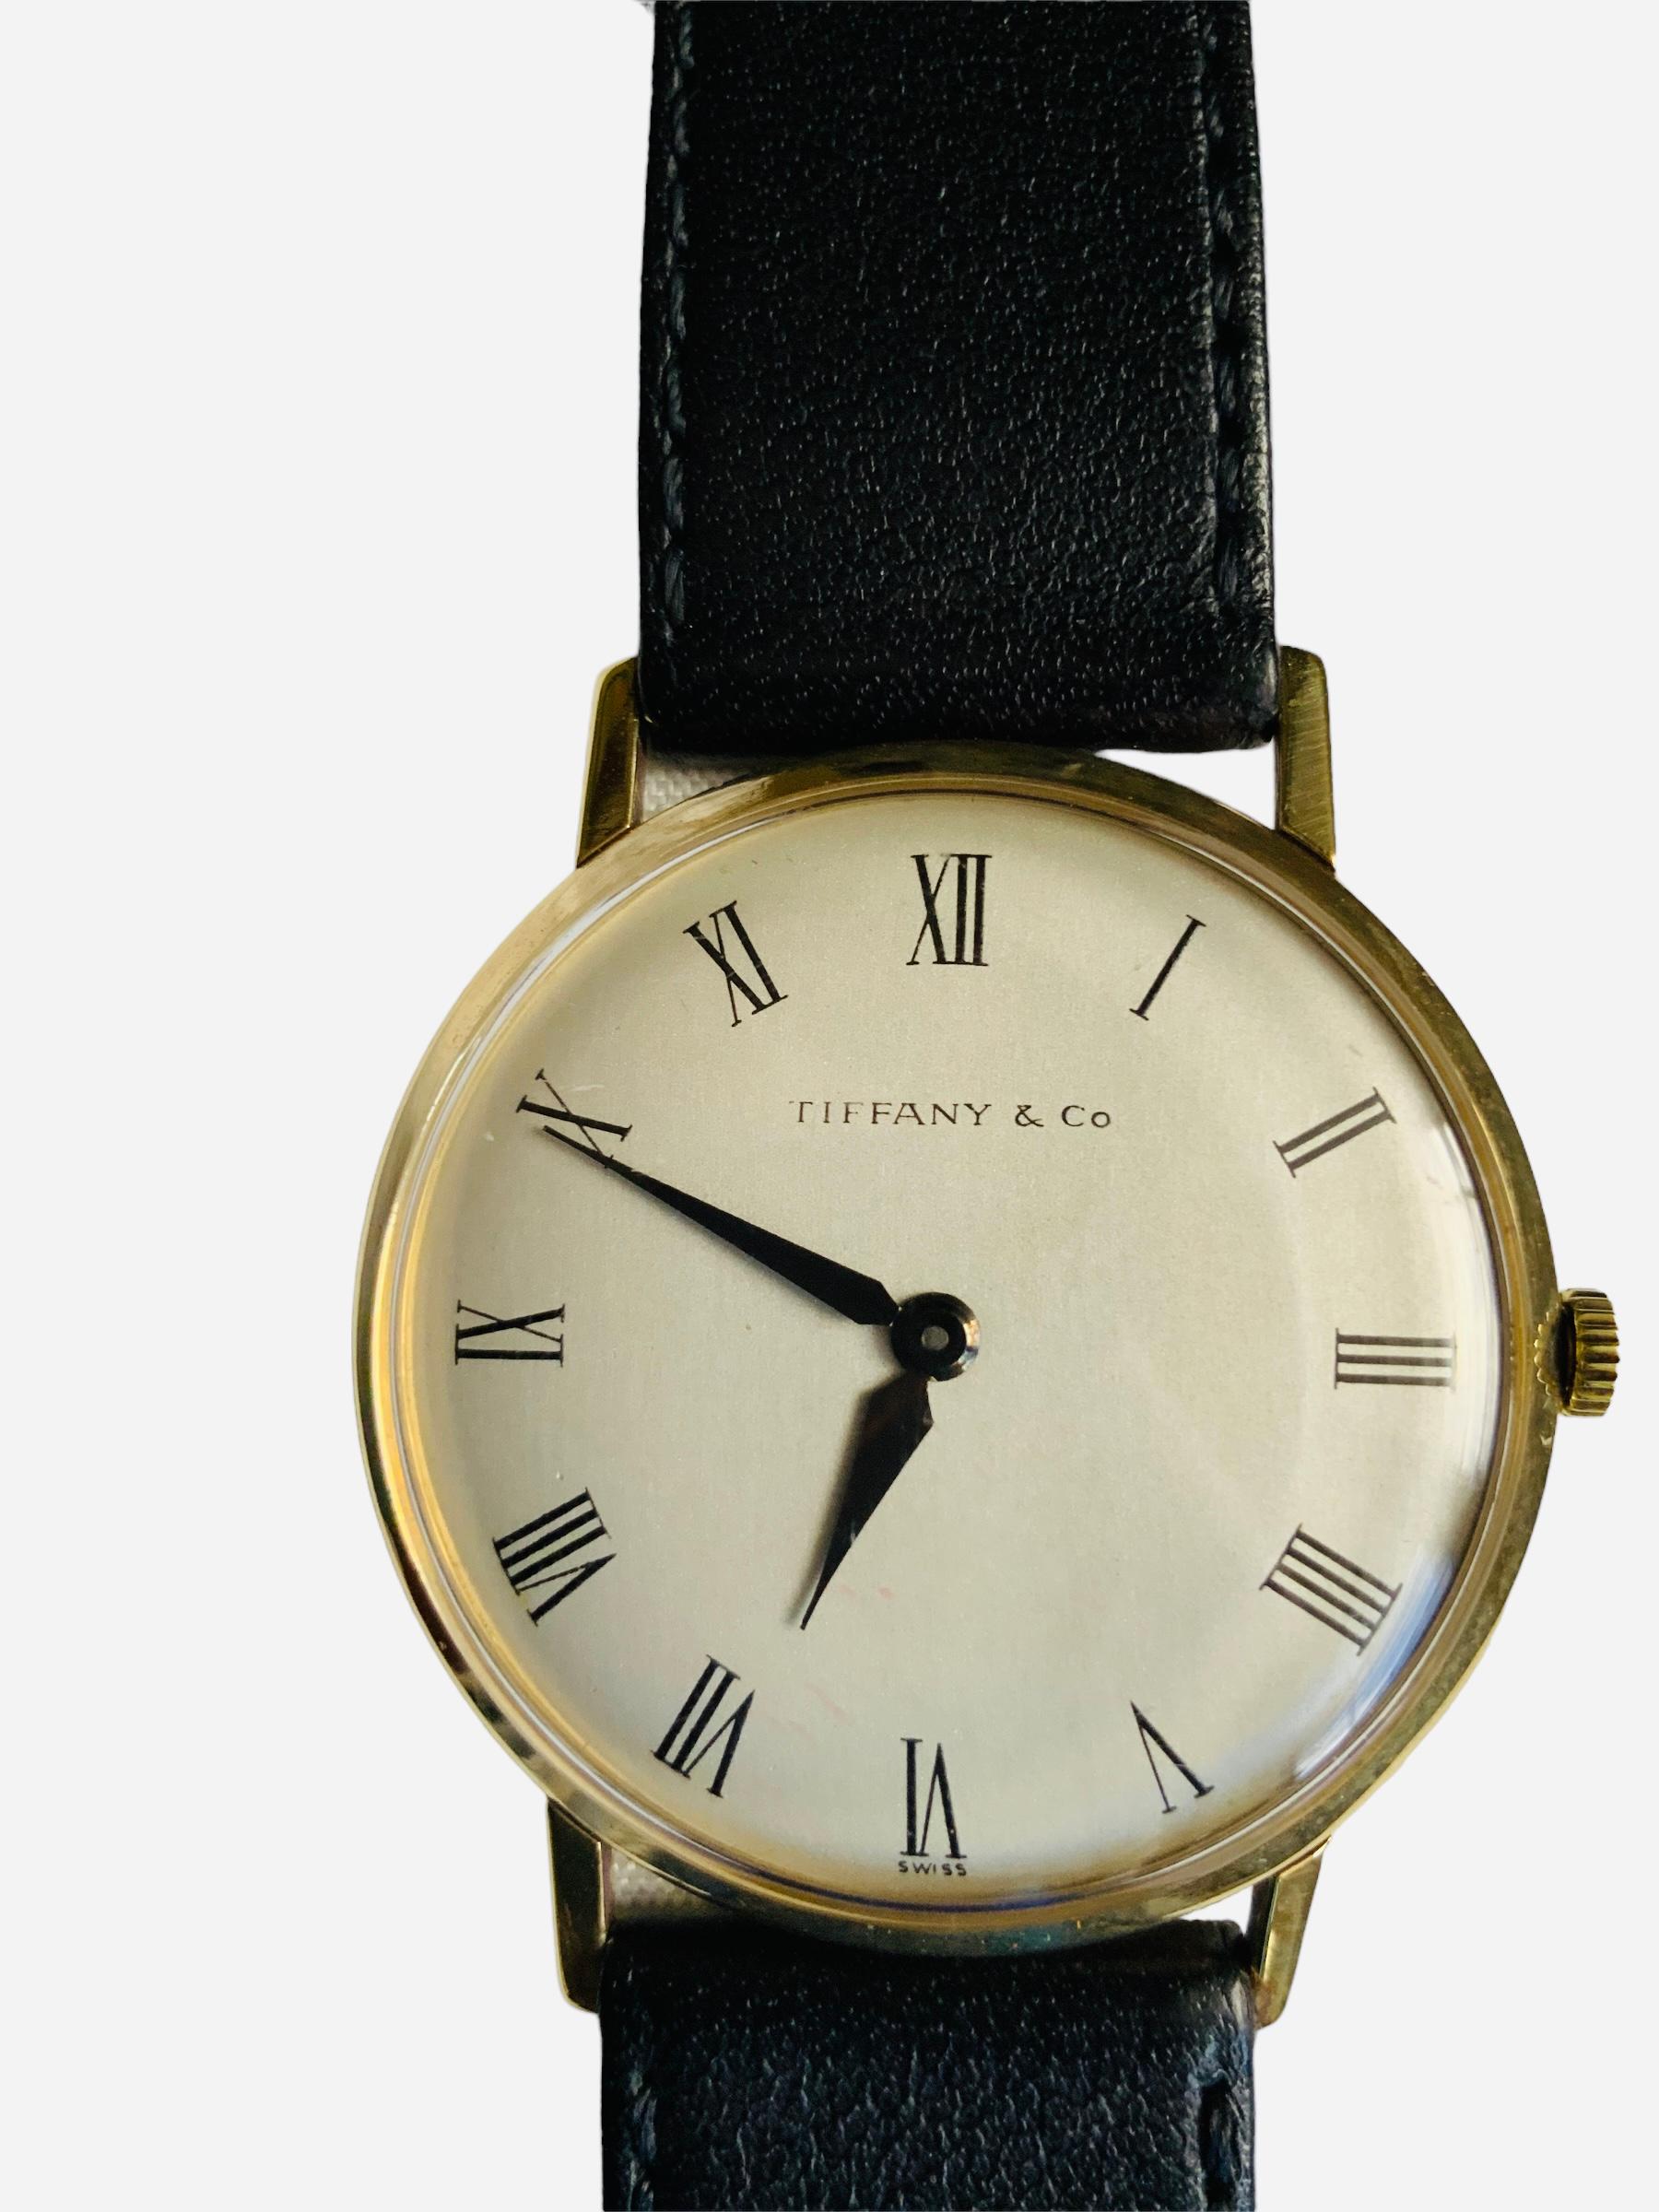 Il s'agit d'une montre-bracelet pour homme de Tiffany & Company. Elle présente un boîtier rond en or 18 carats, un cadran gris blanchâtre avec des chiffres romains et des aiguilles heures/minutes noires. Sous la position 6 heures, elle porte le